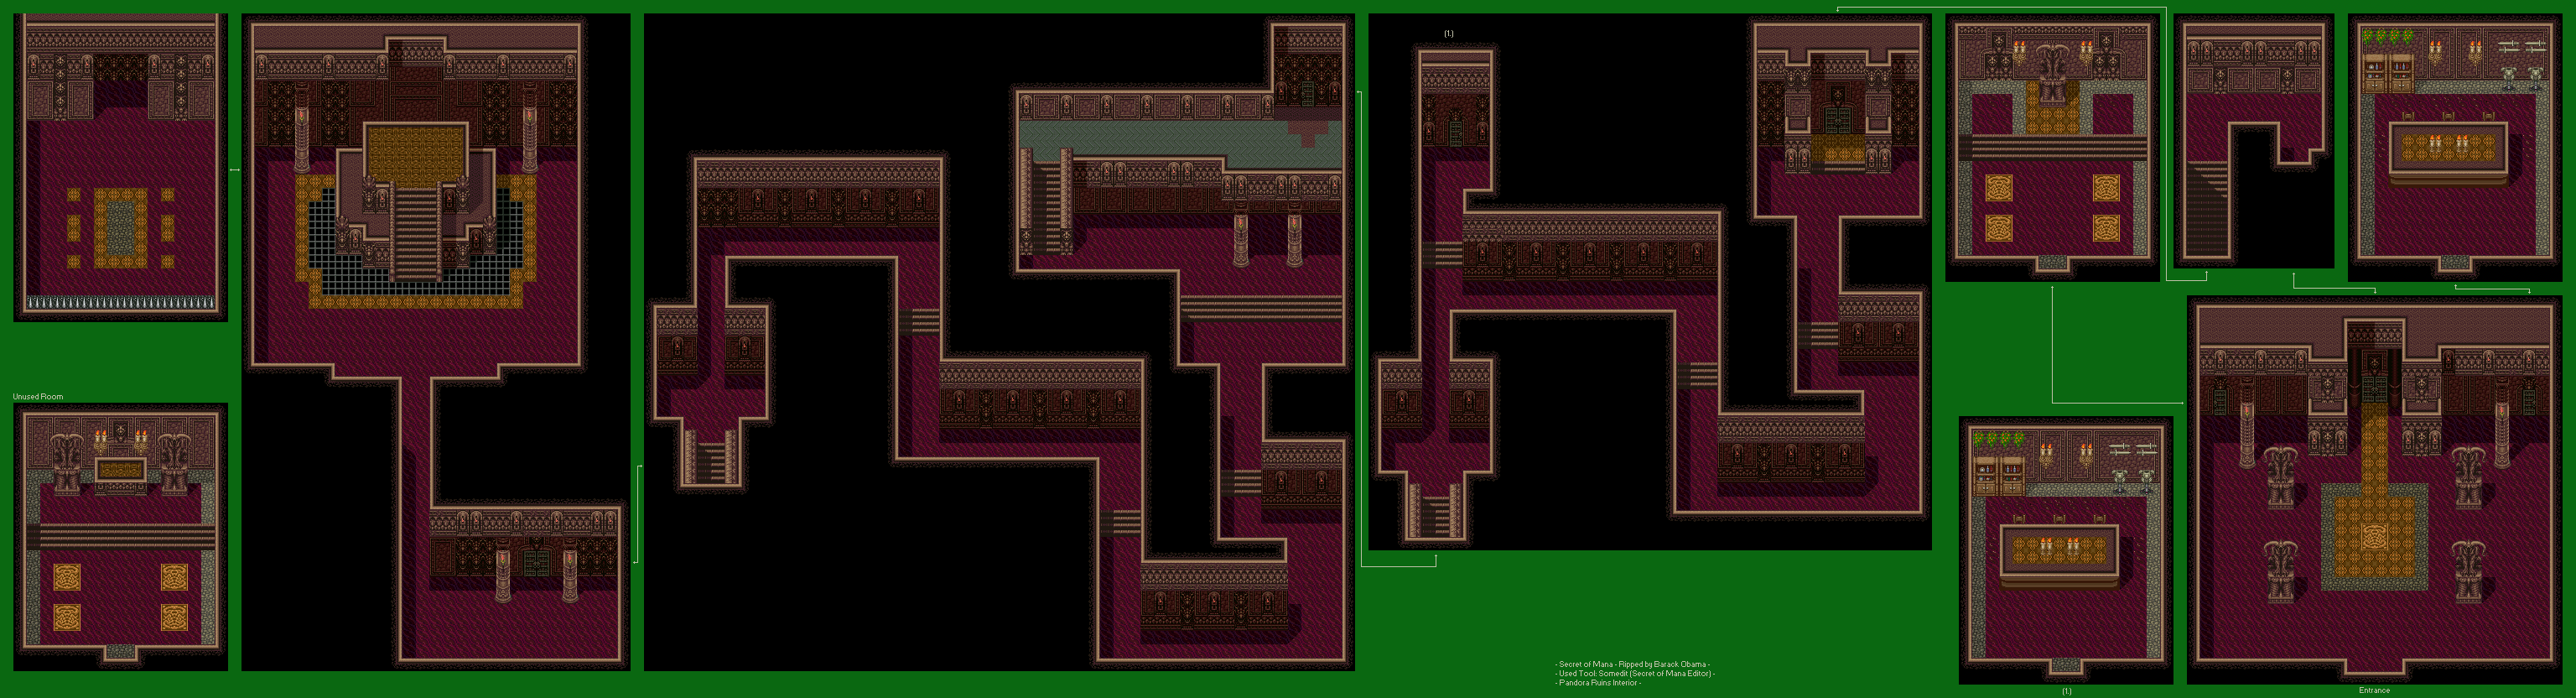 Secret of Mana - Pandora Ruins (Interior)